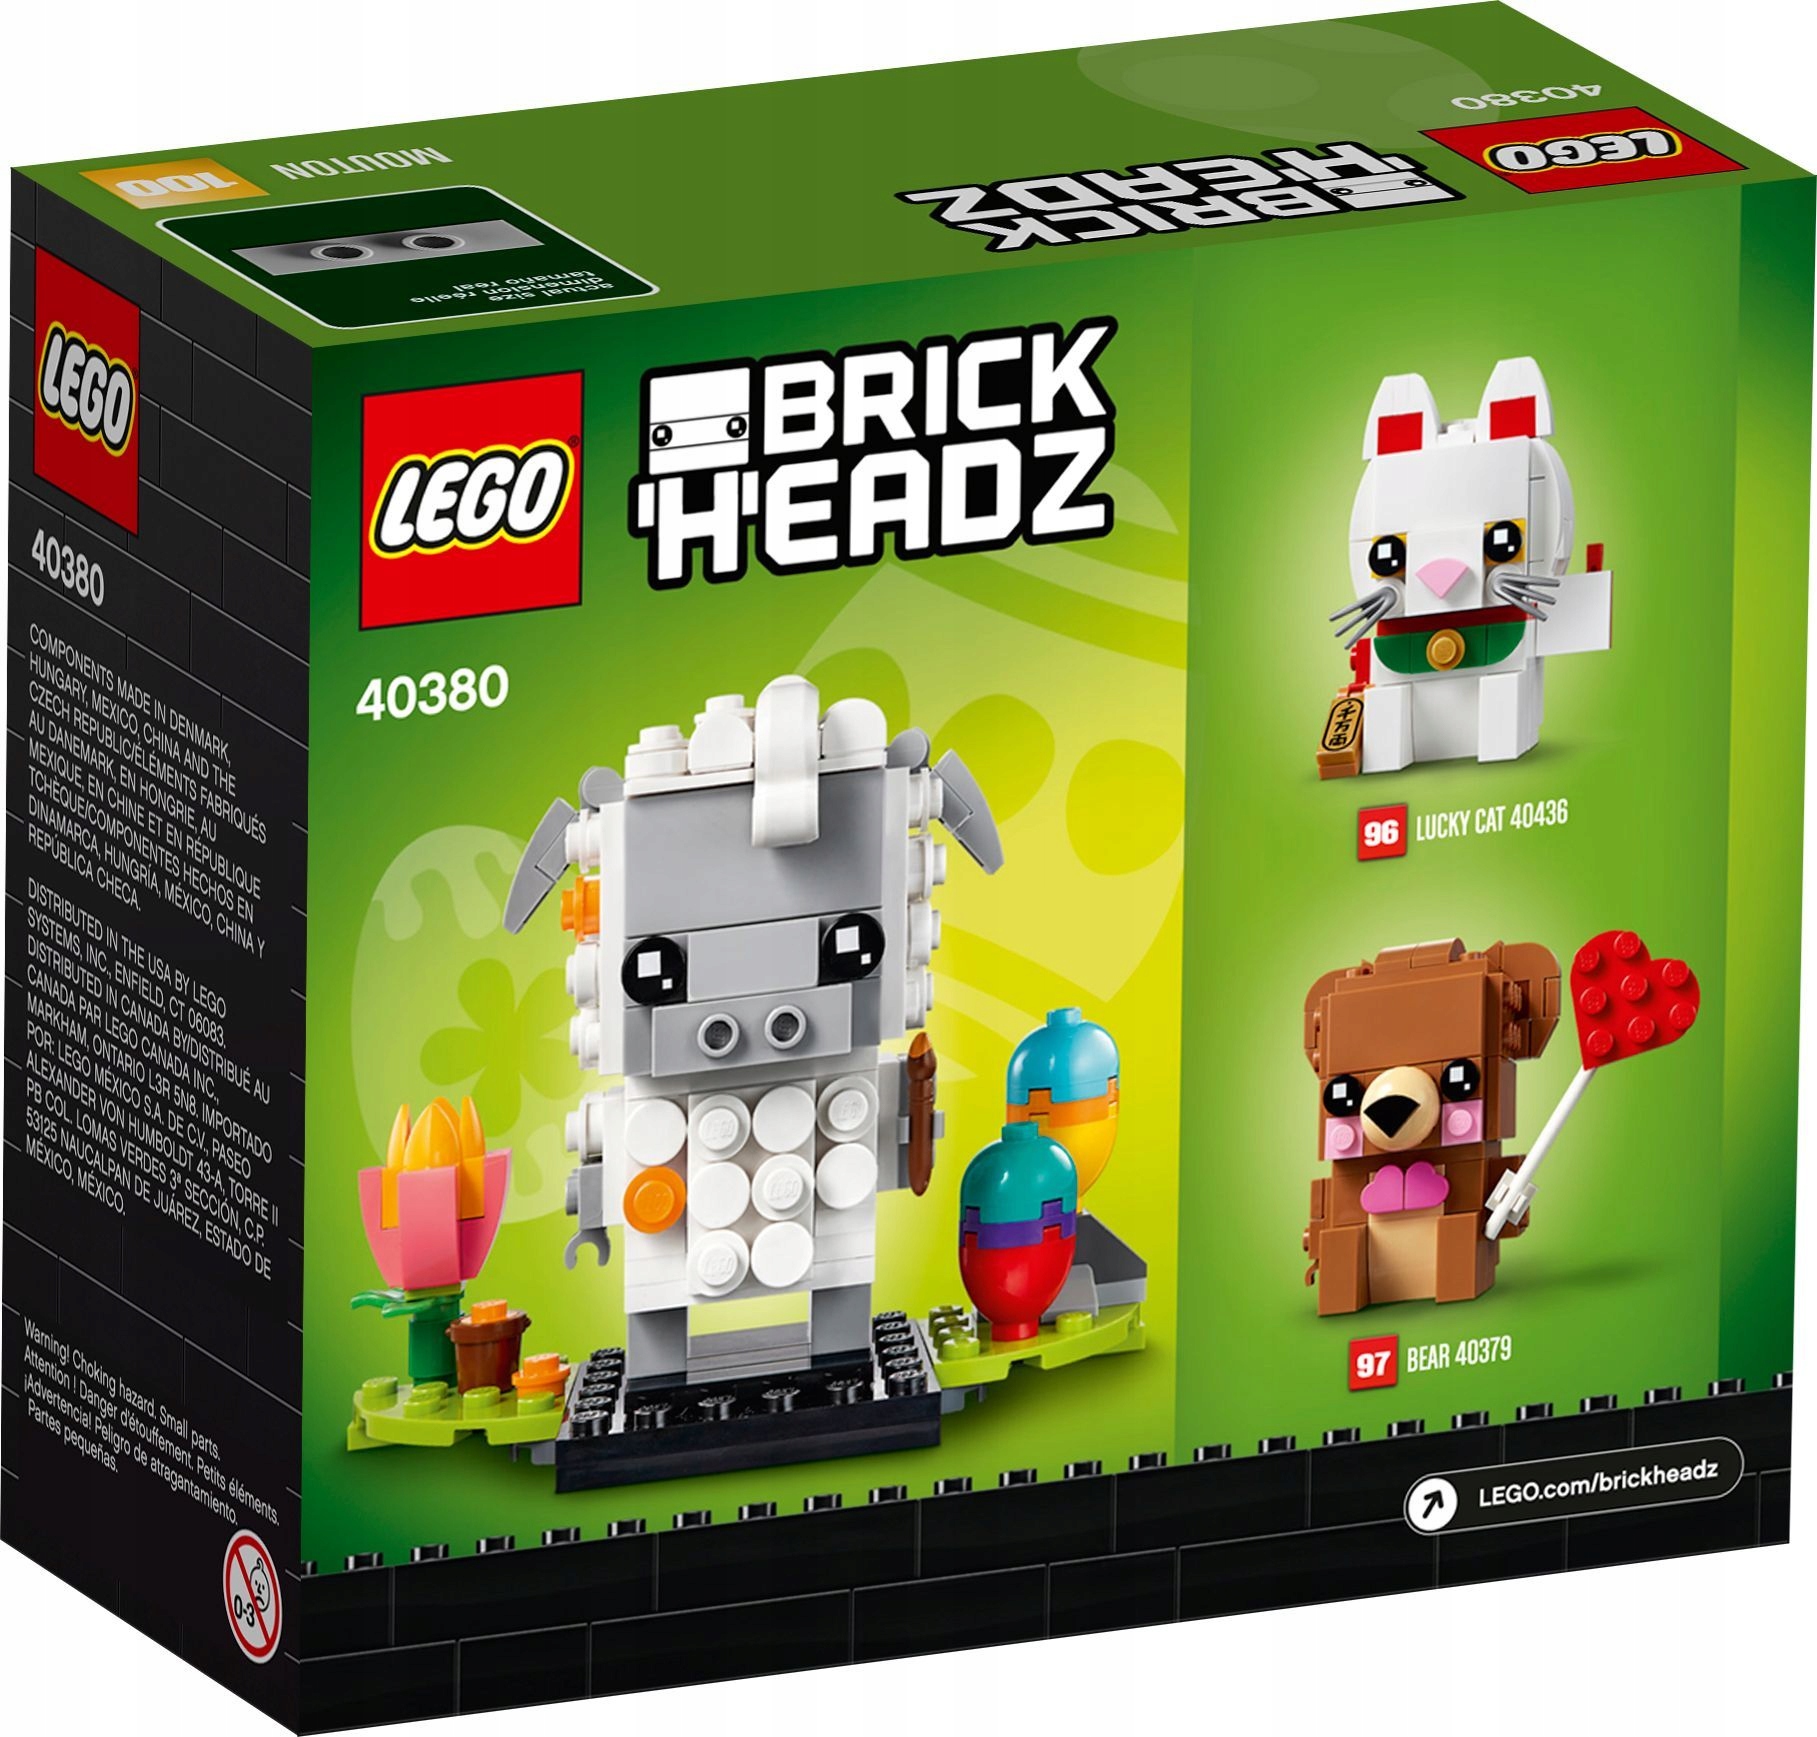 LEGO BrickHeadz 40380 Easter Sheep SHEEP Product Number 40380